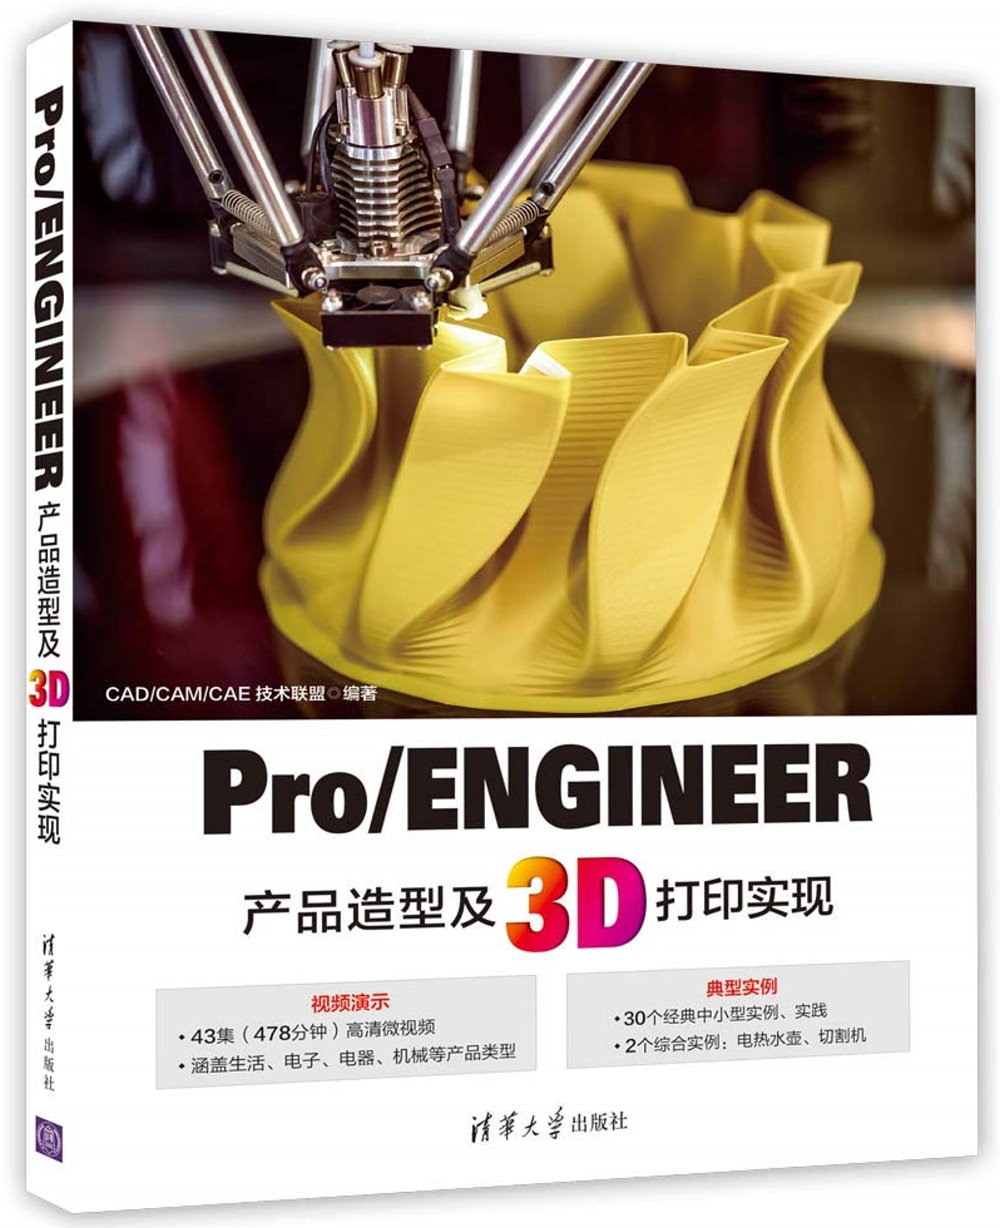 Pro/ENGINEER產品造型及3D列印實現